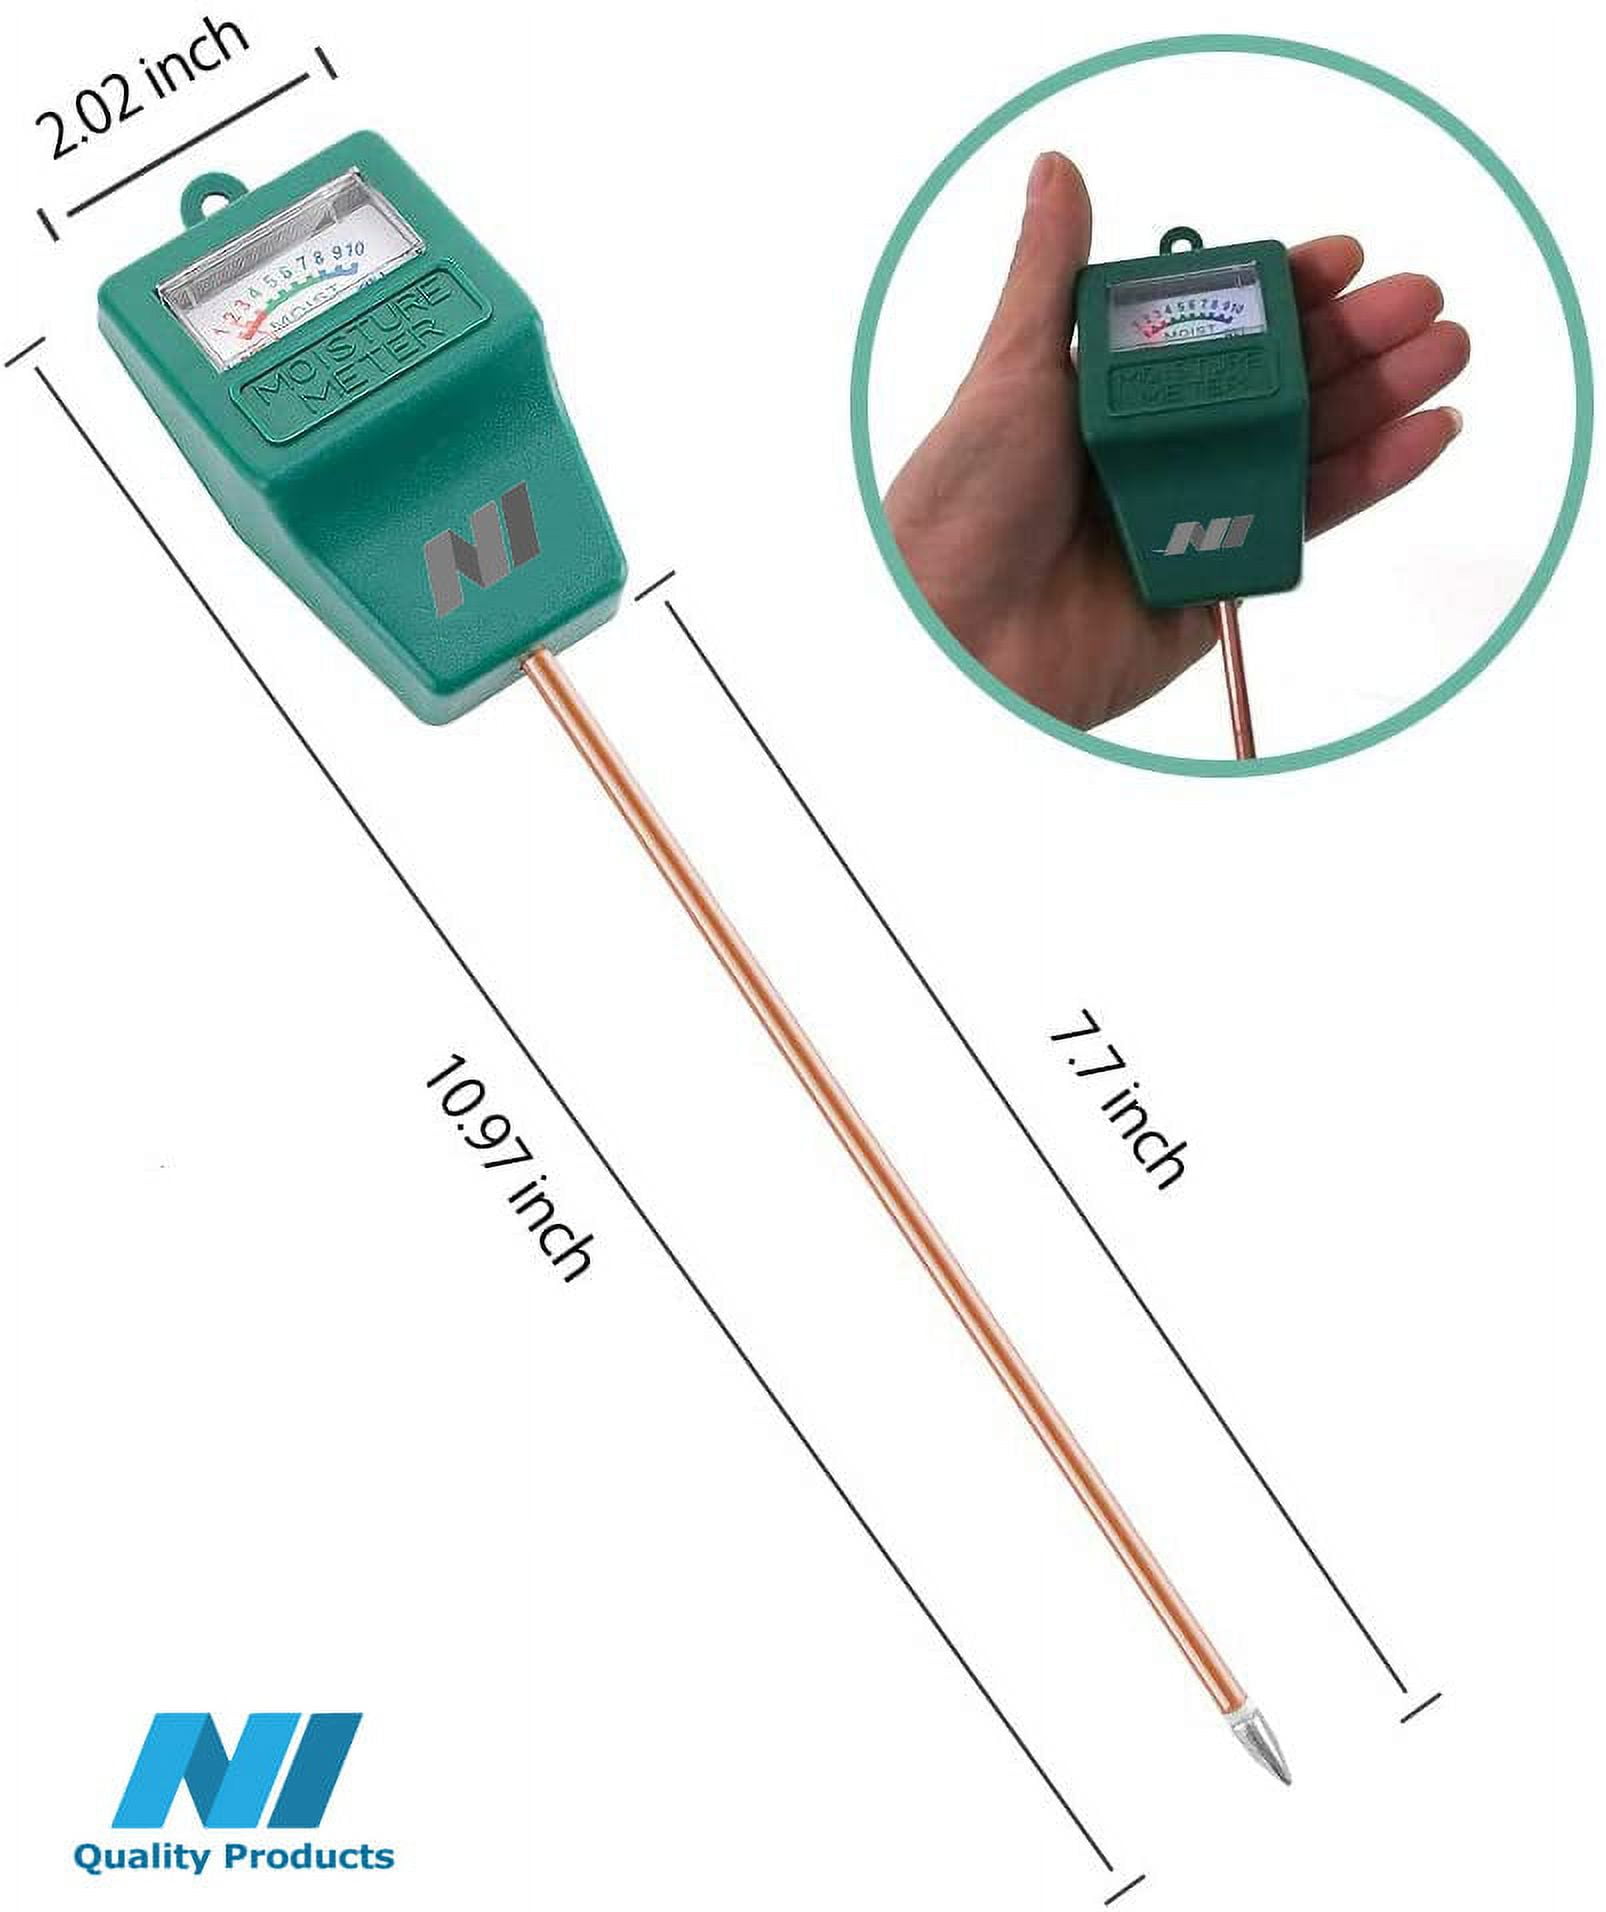 Yizerel 2 Packs Soil Moisture Meter for House Plants, Plant Water Meter  Soil Tester Test Kit Soil Hygrometer Sensor for Indoor & Outdoor Use Garden